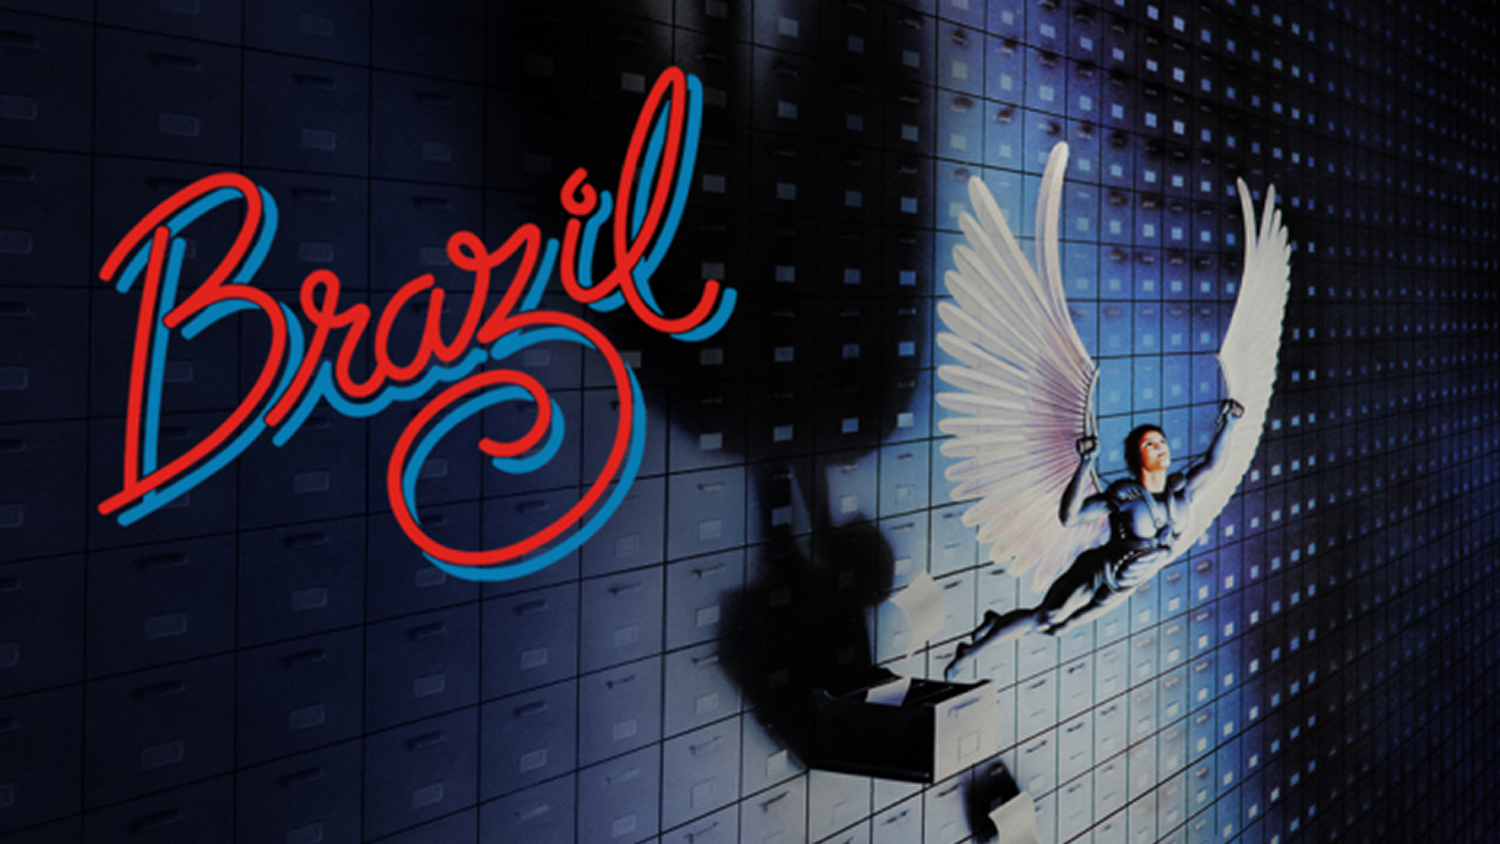 Brazil (1985) – Drama, Sci-Fi